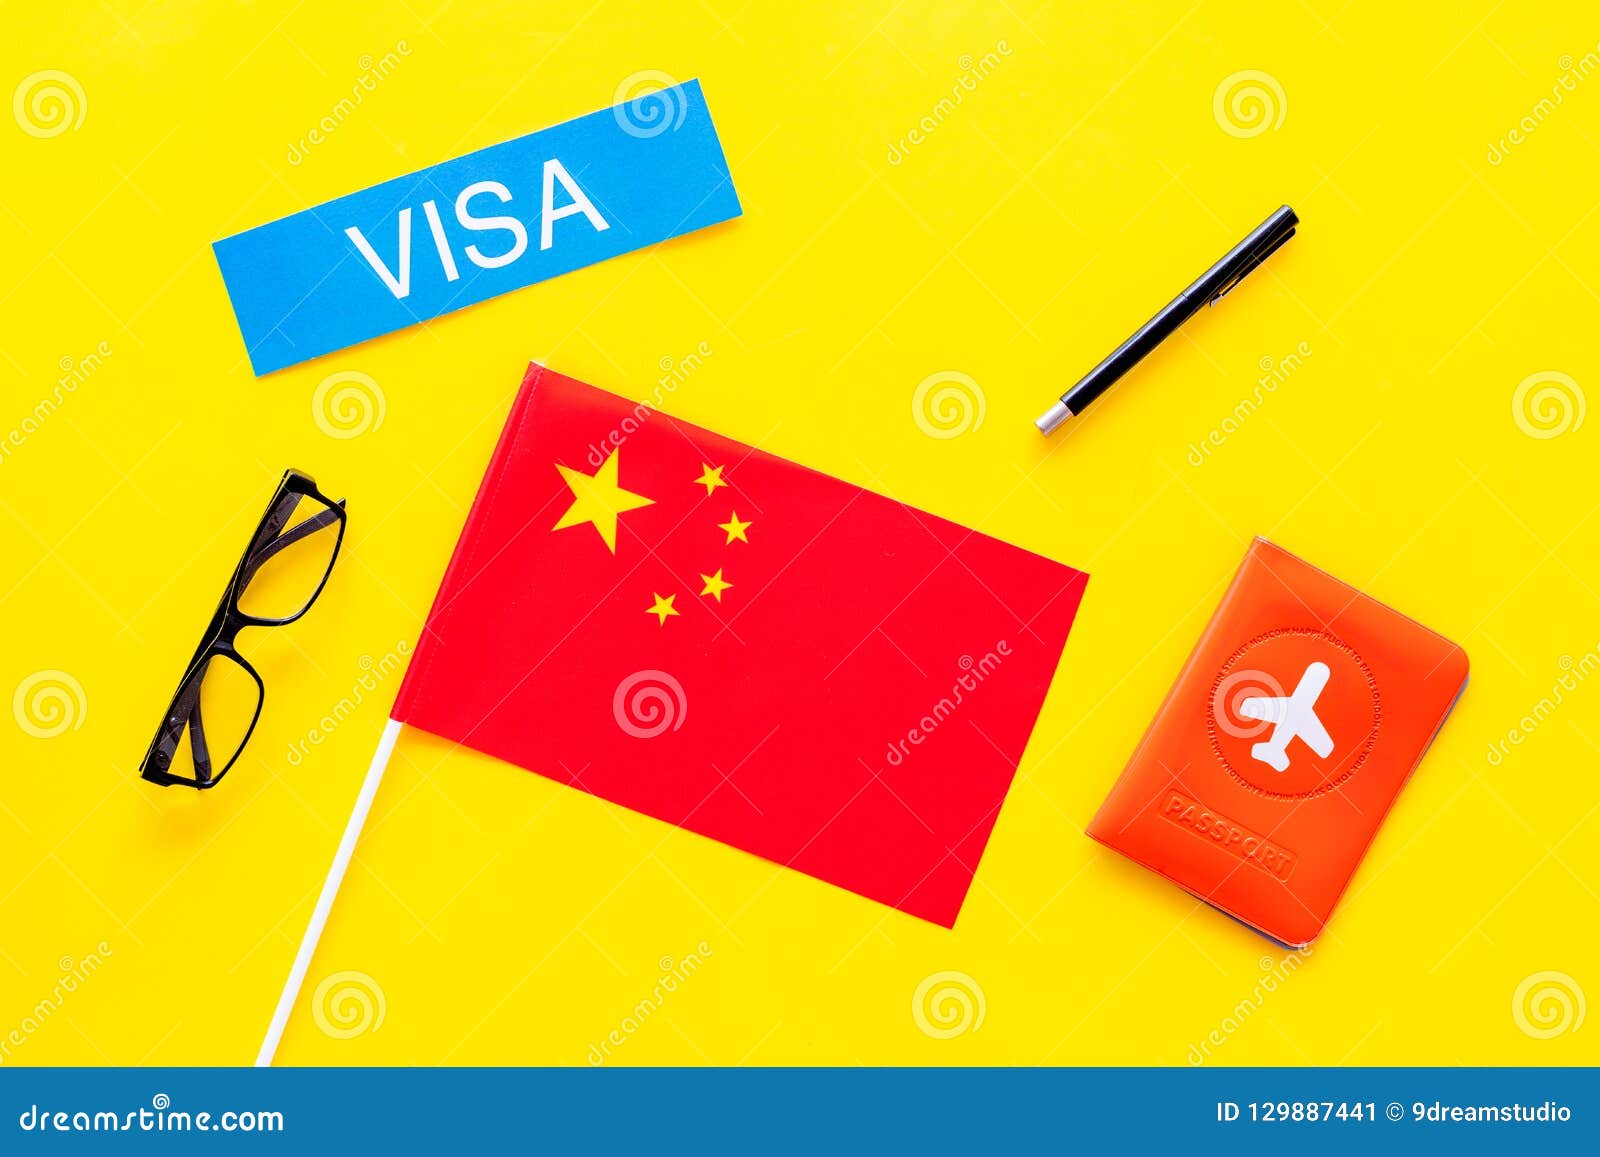 Unduh 510 Background Foto Visa China Gratis